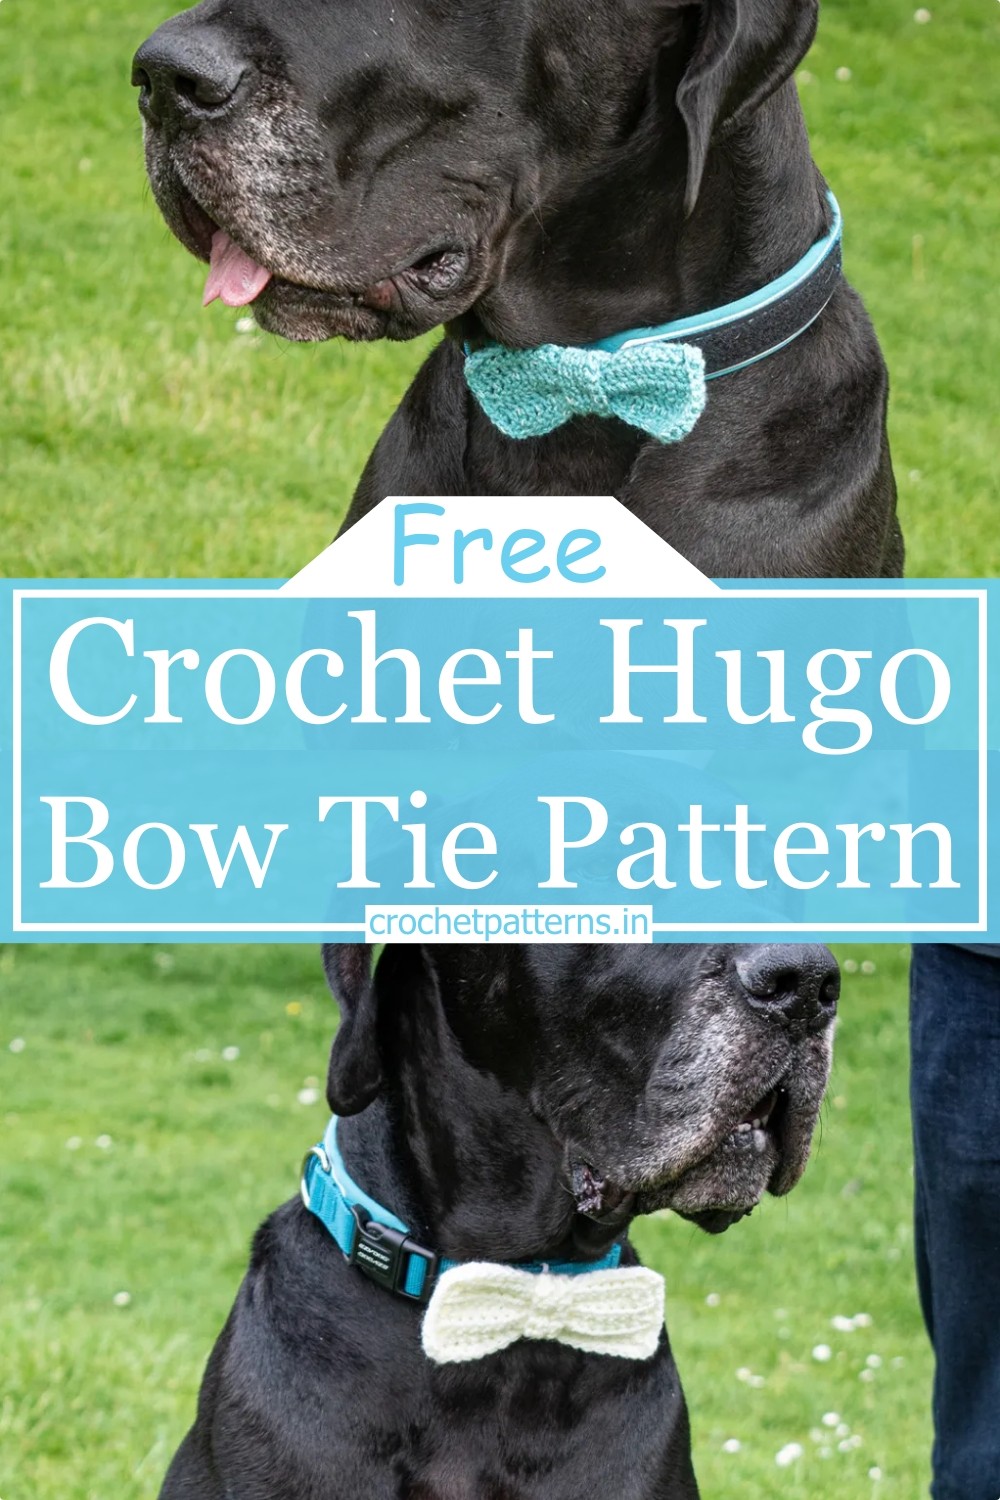 Crochet Hugo Bow Tie Pattern